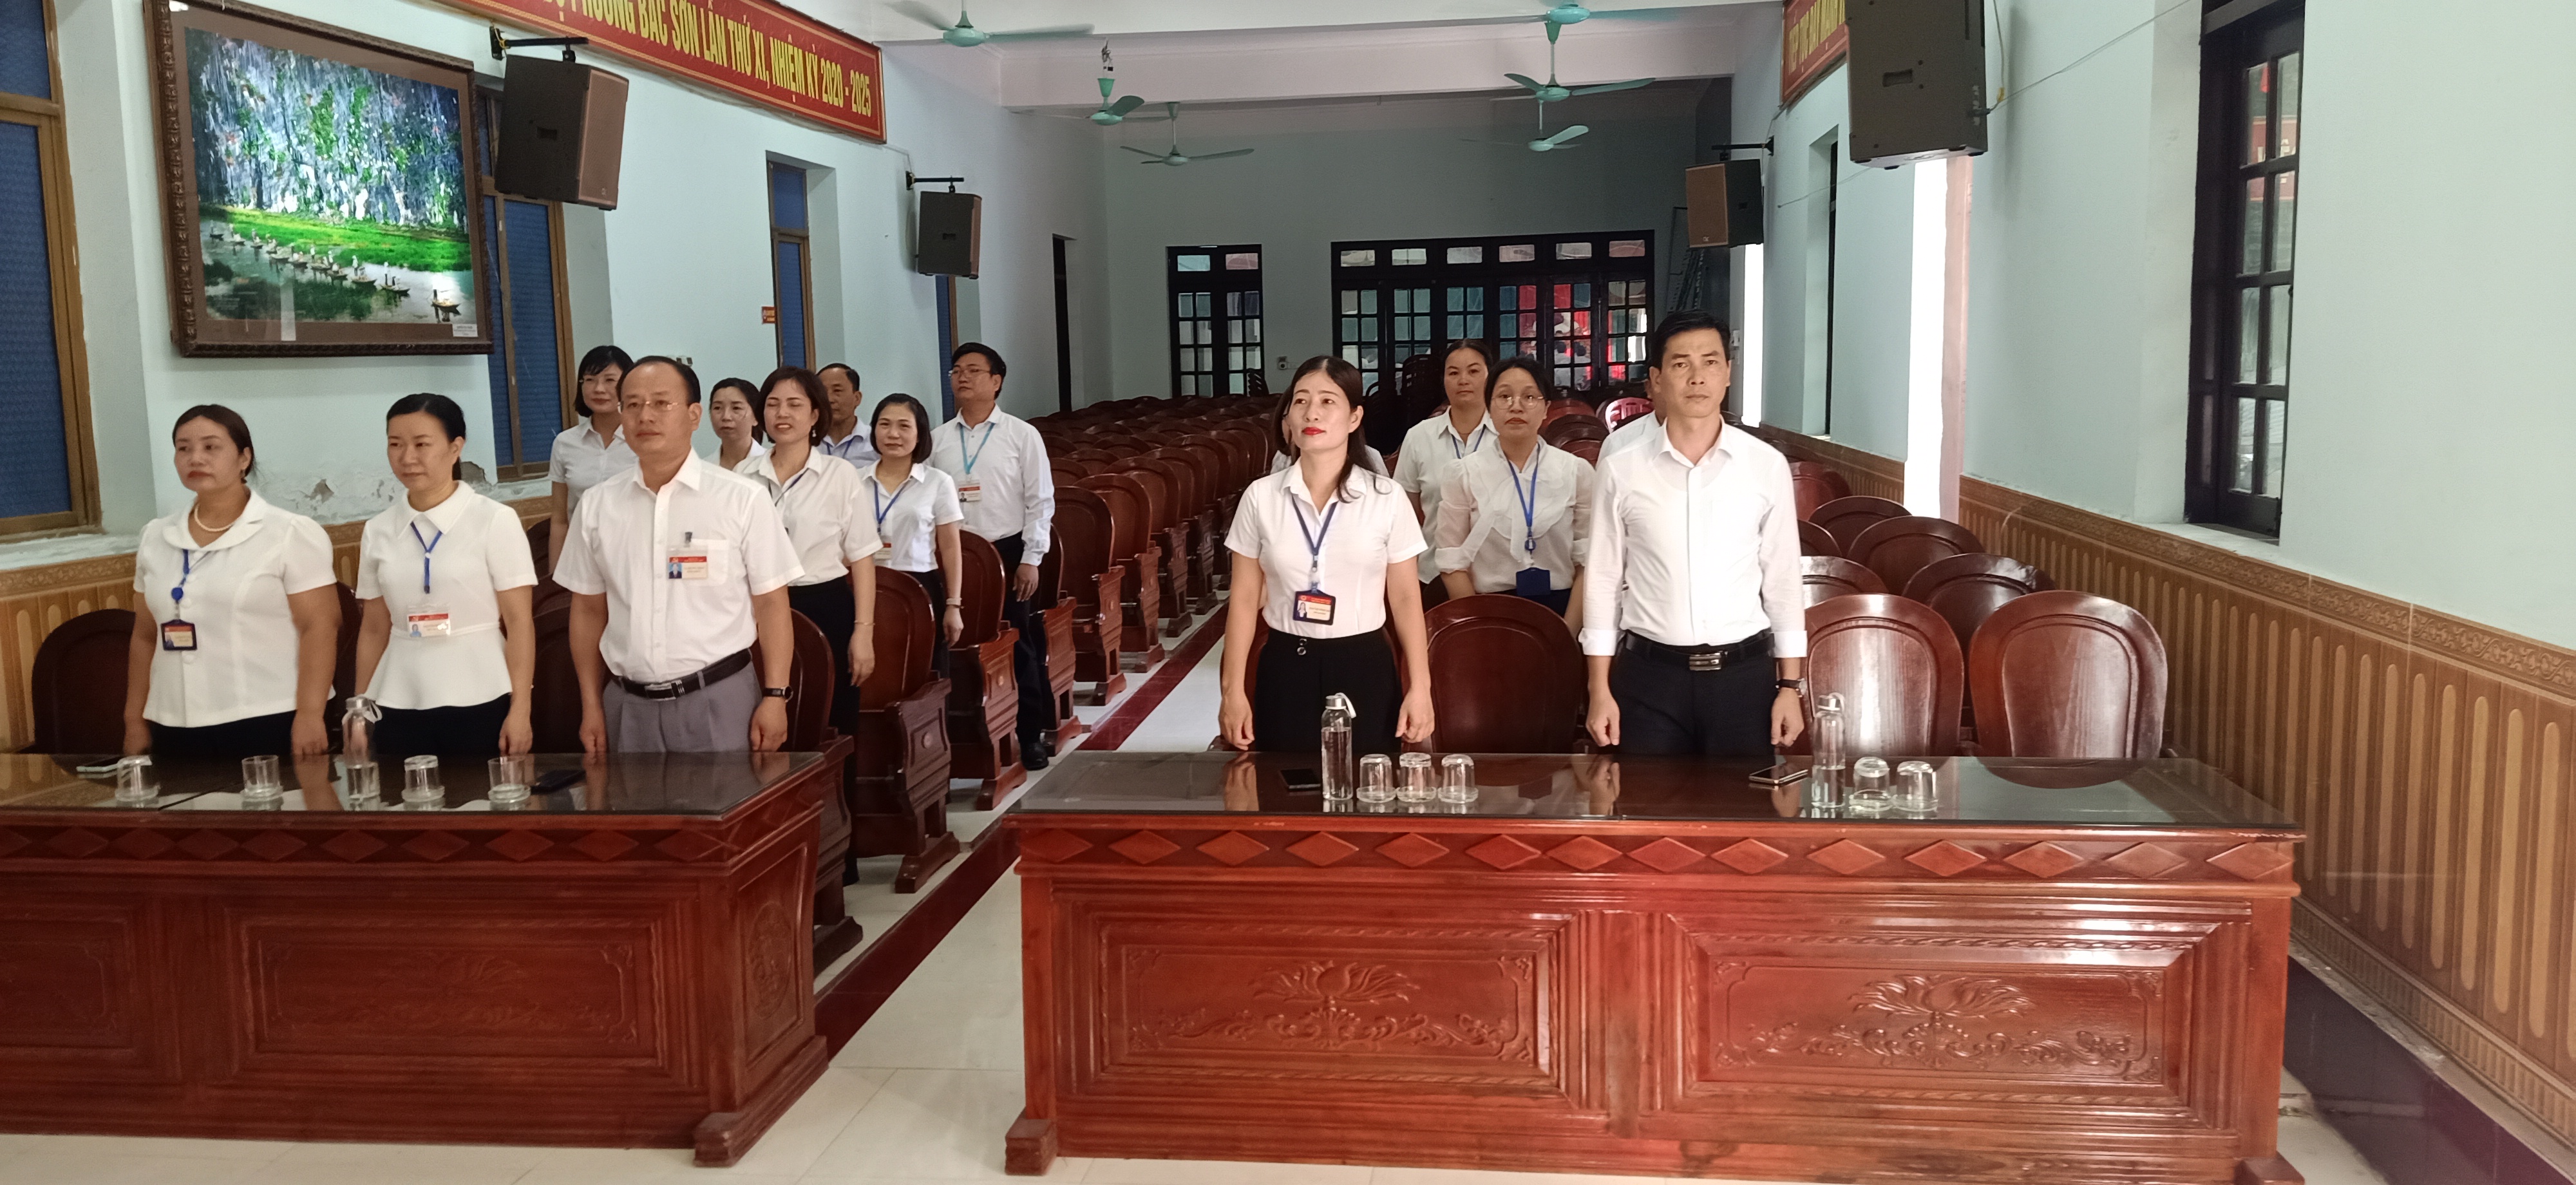 Đảng ủy, HĐND, UBND, UBMTTQVN phường Bắc Sơn tổ chức buổi sinh hoạt chính trị dưới nghi thức chào cờ đầu tuần tháng 6, năm 2023